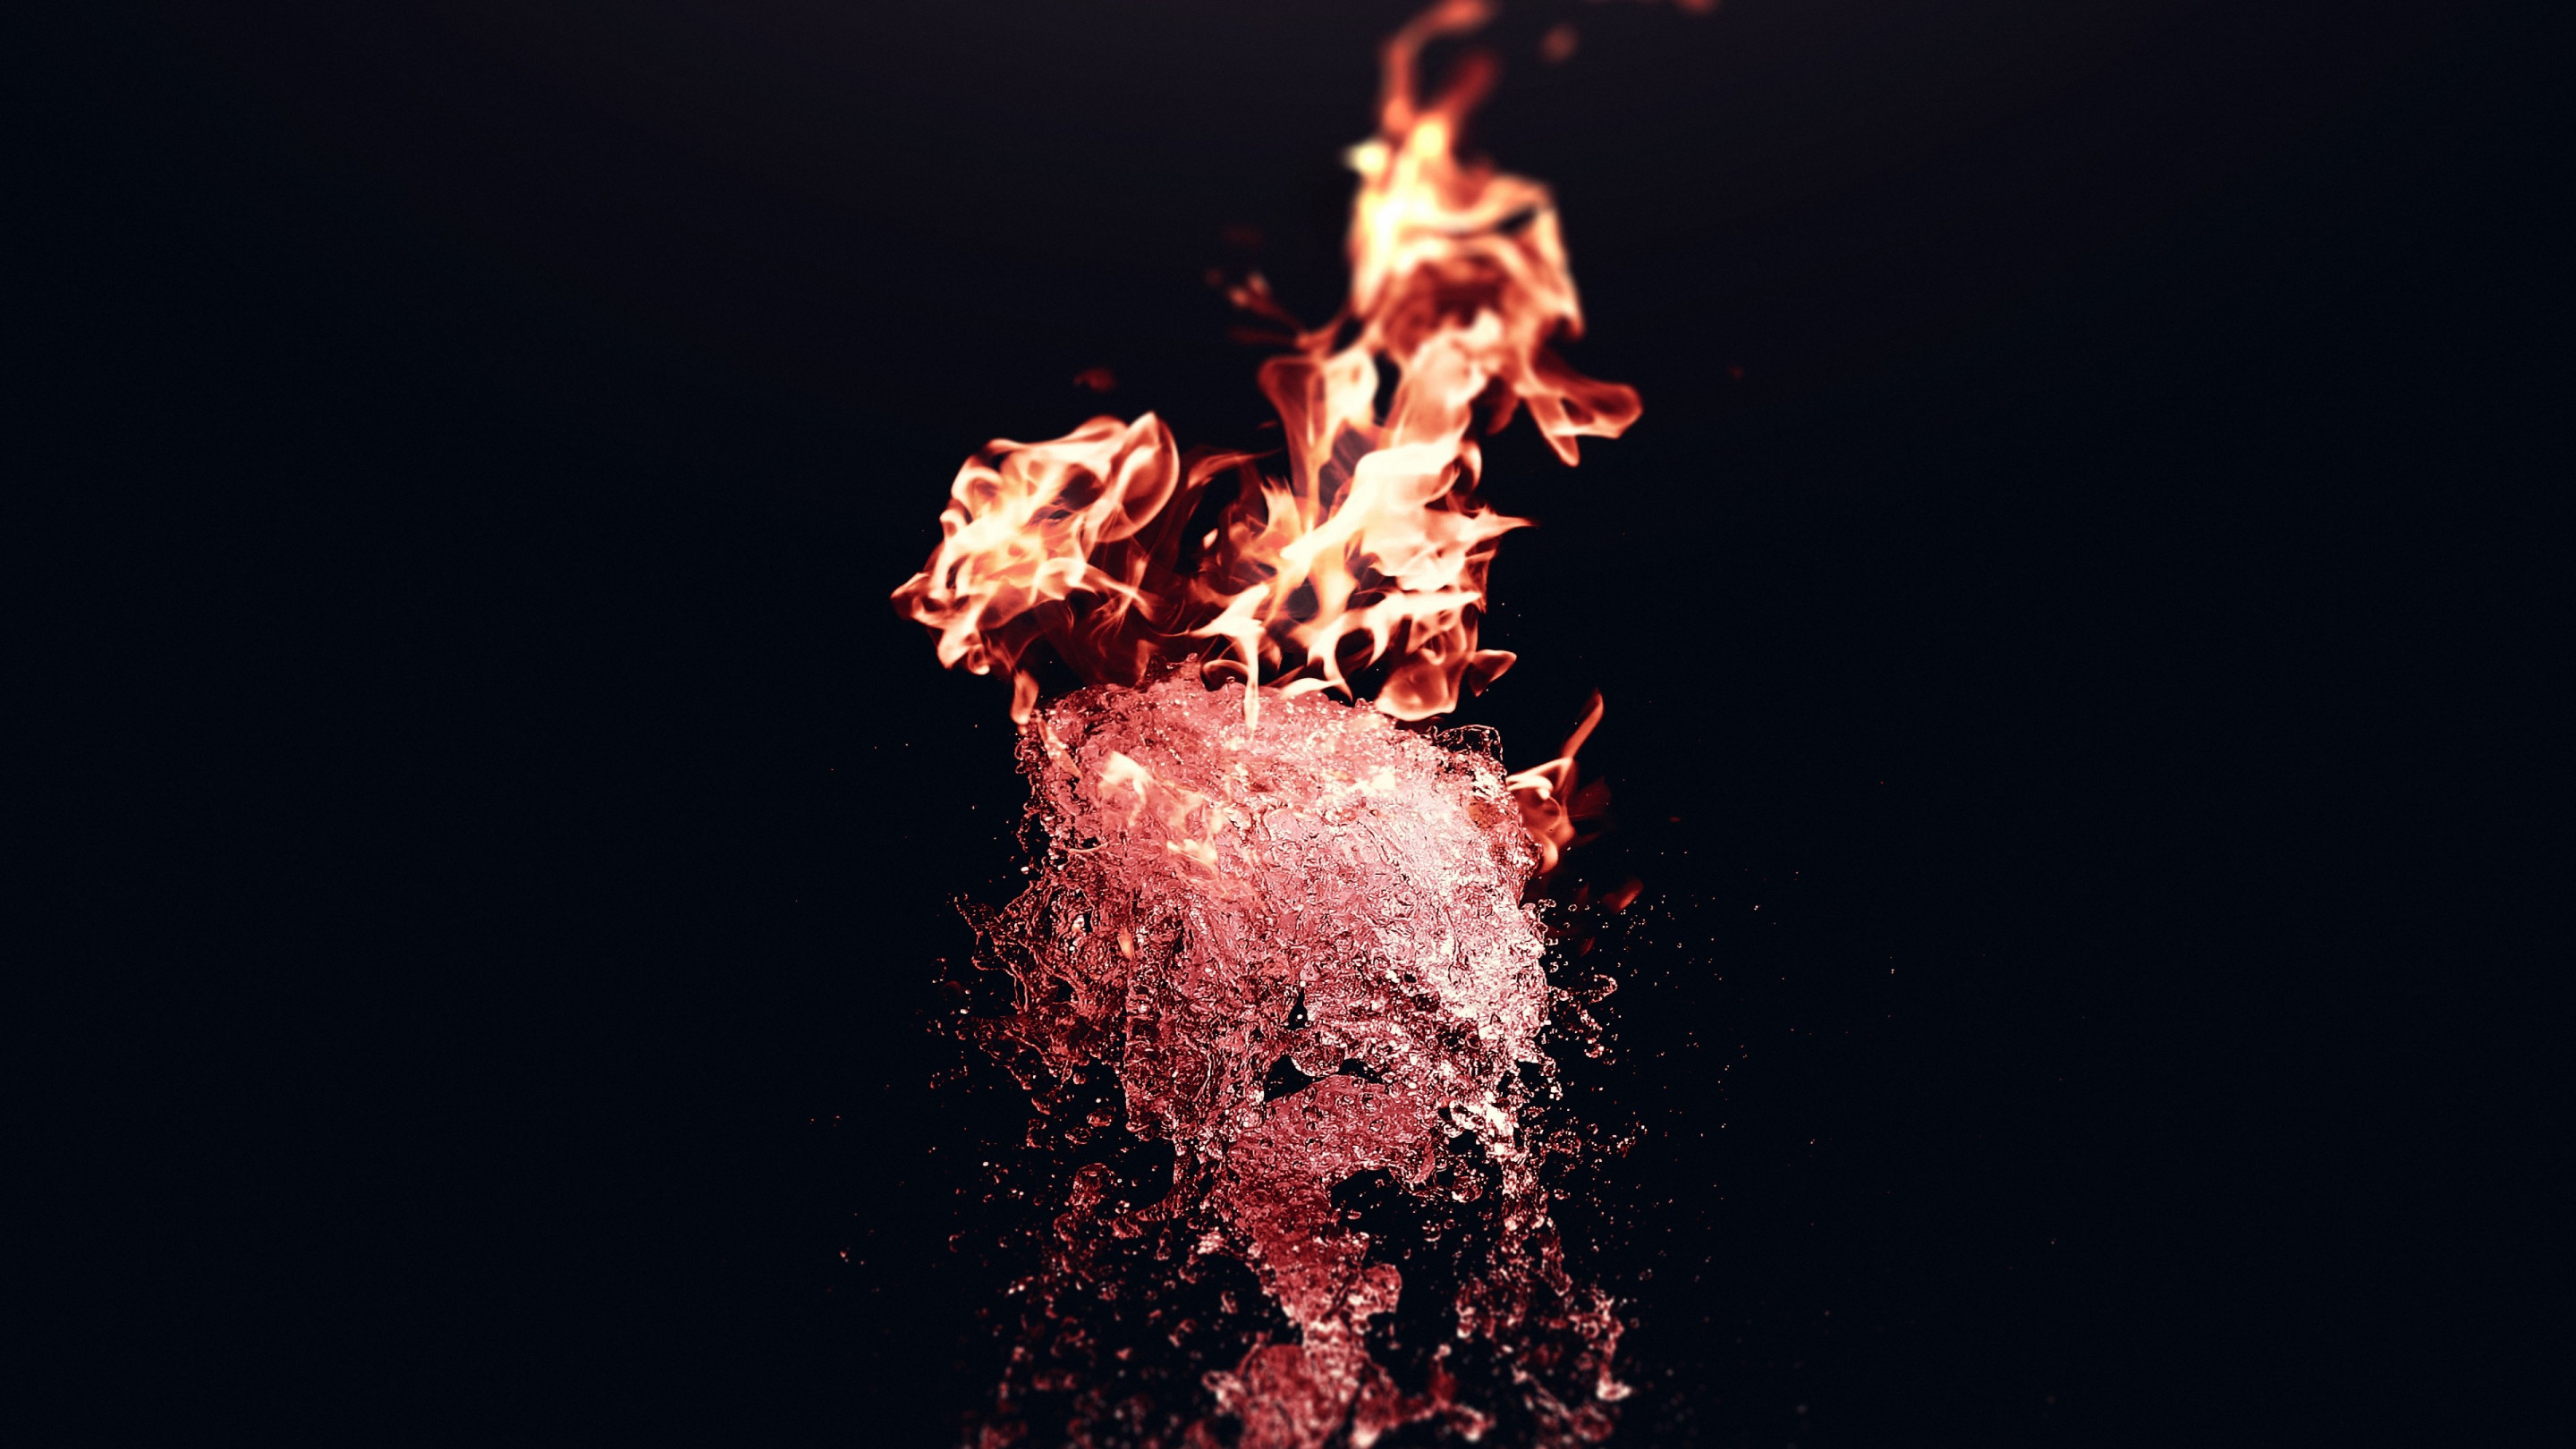 Fire vs Water wallpaper 2880x1620